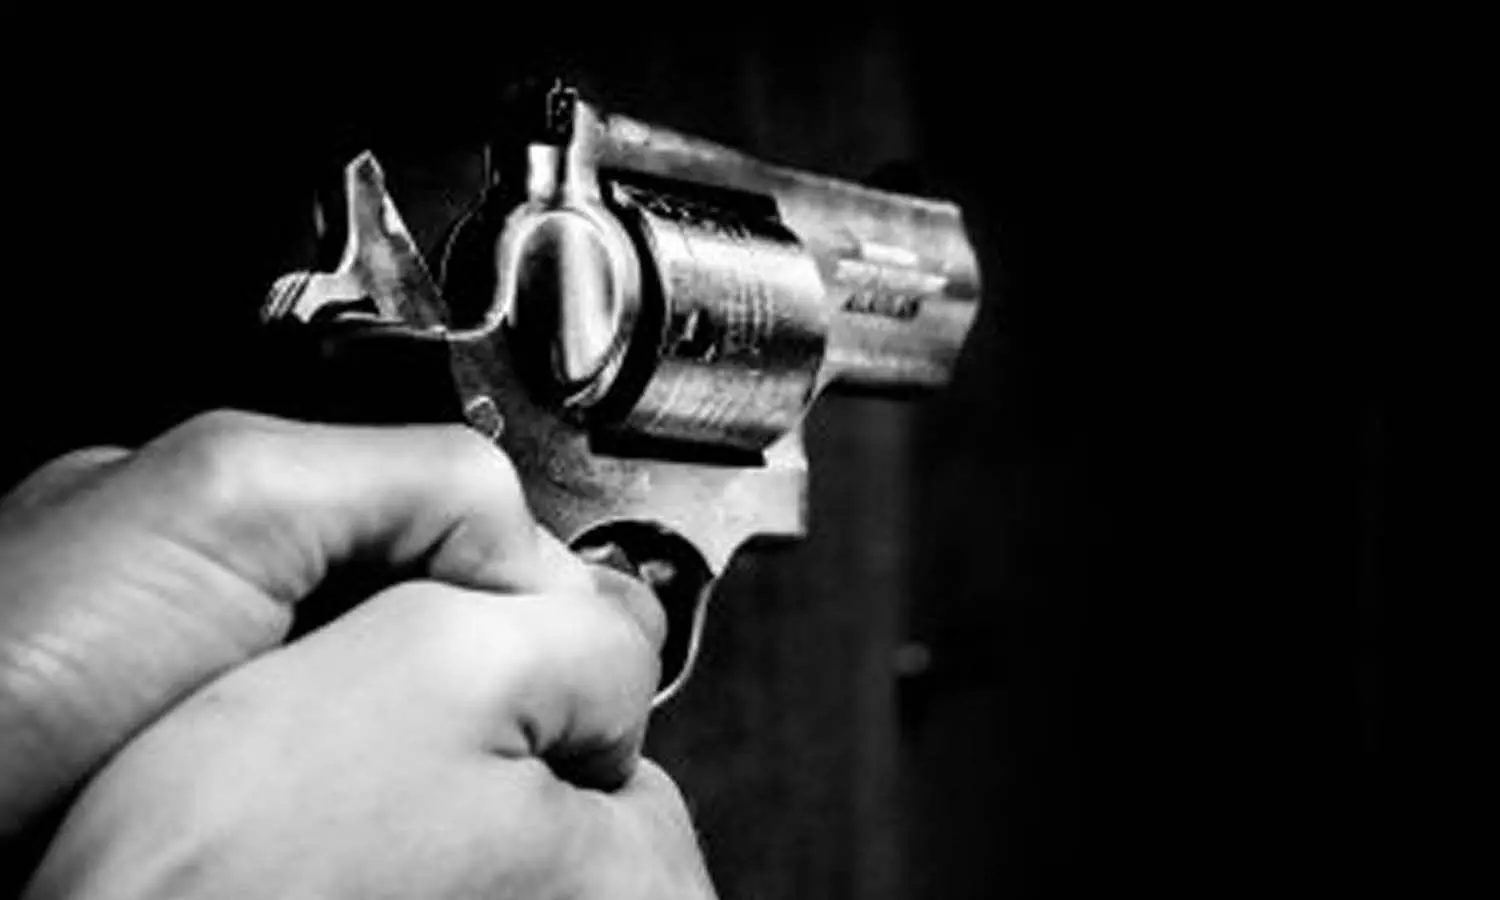 Amethi Crime News: अमेठी में युवक की गोलीमारकर हत्या, छानबीन में जुटी पुलिस